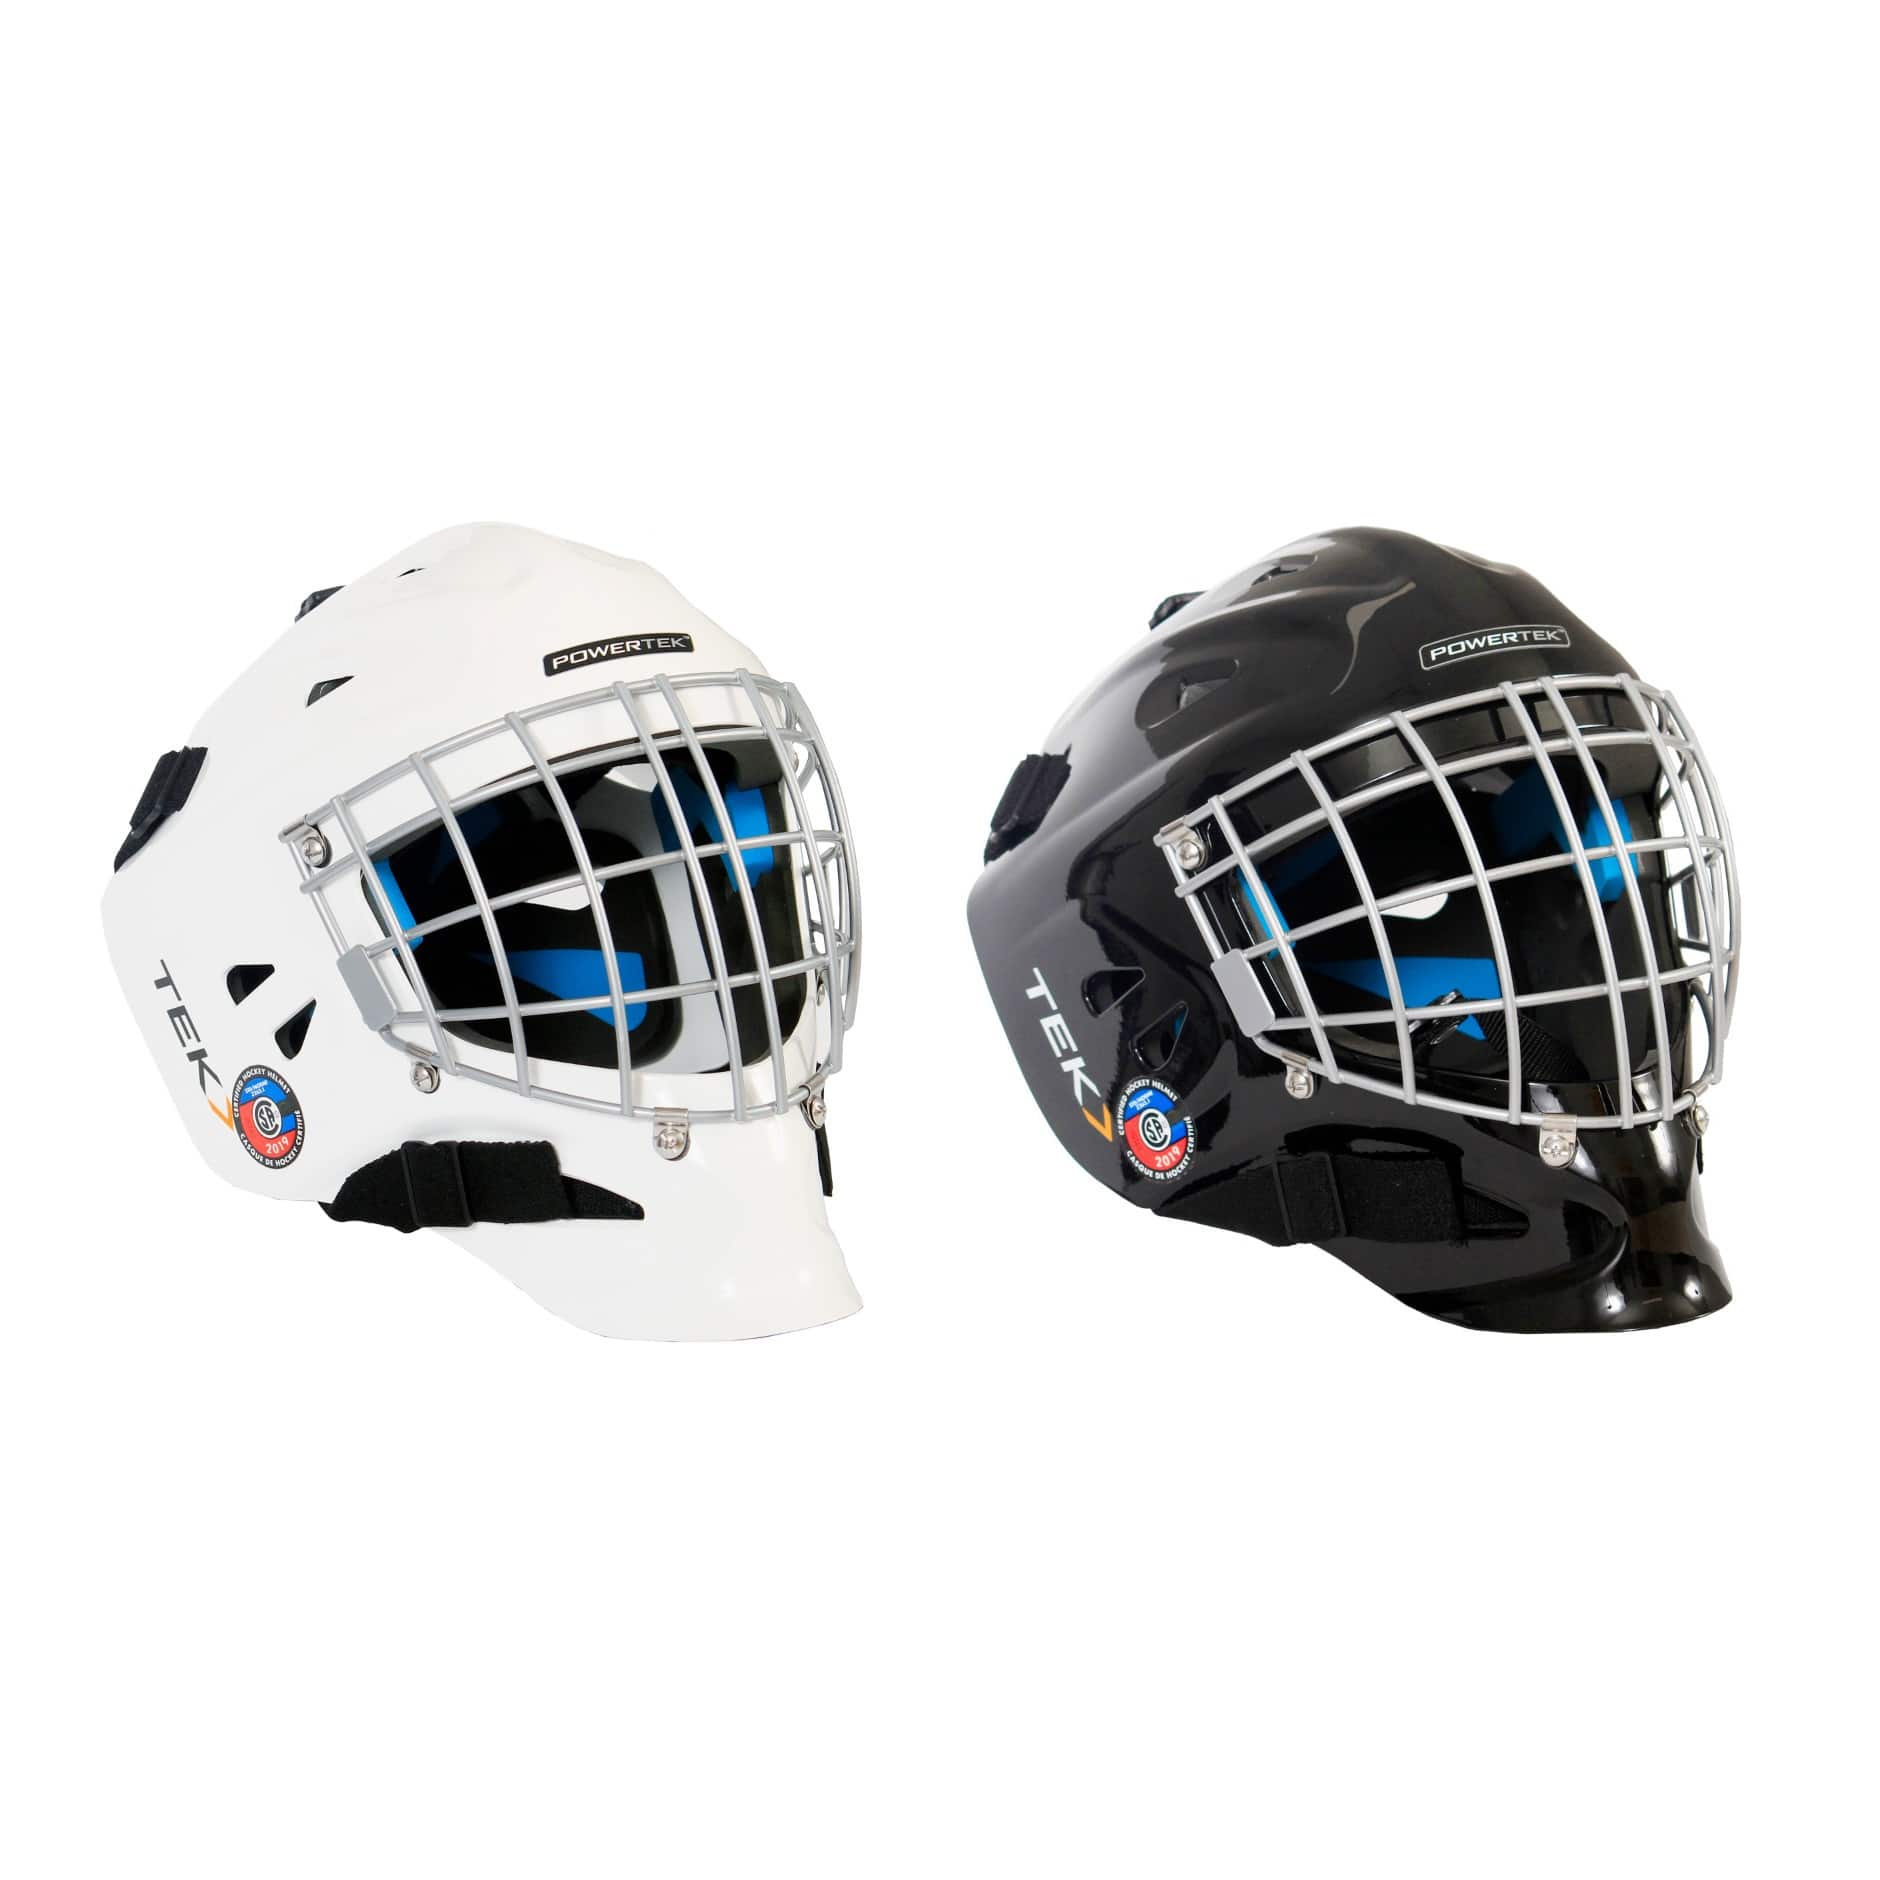 Powertek V3.0 Goalie Helmet